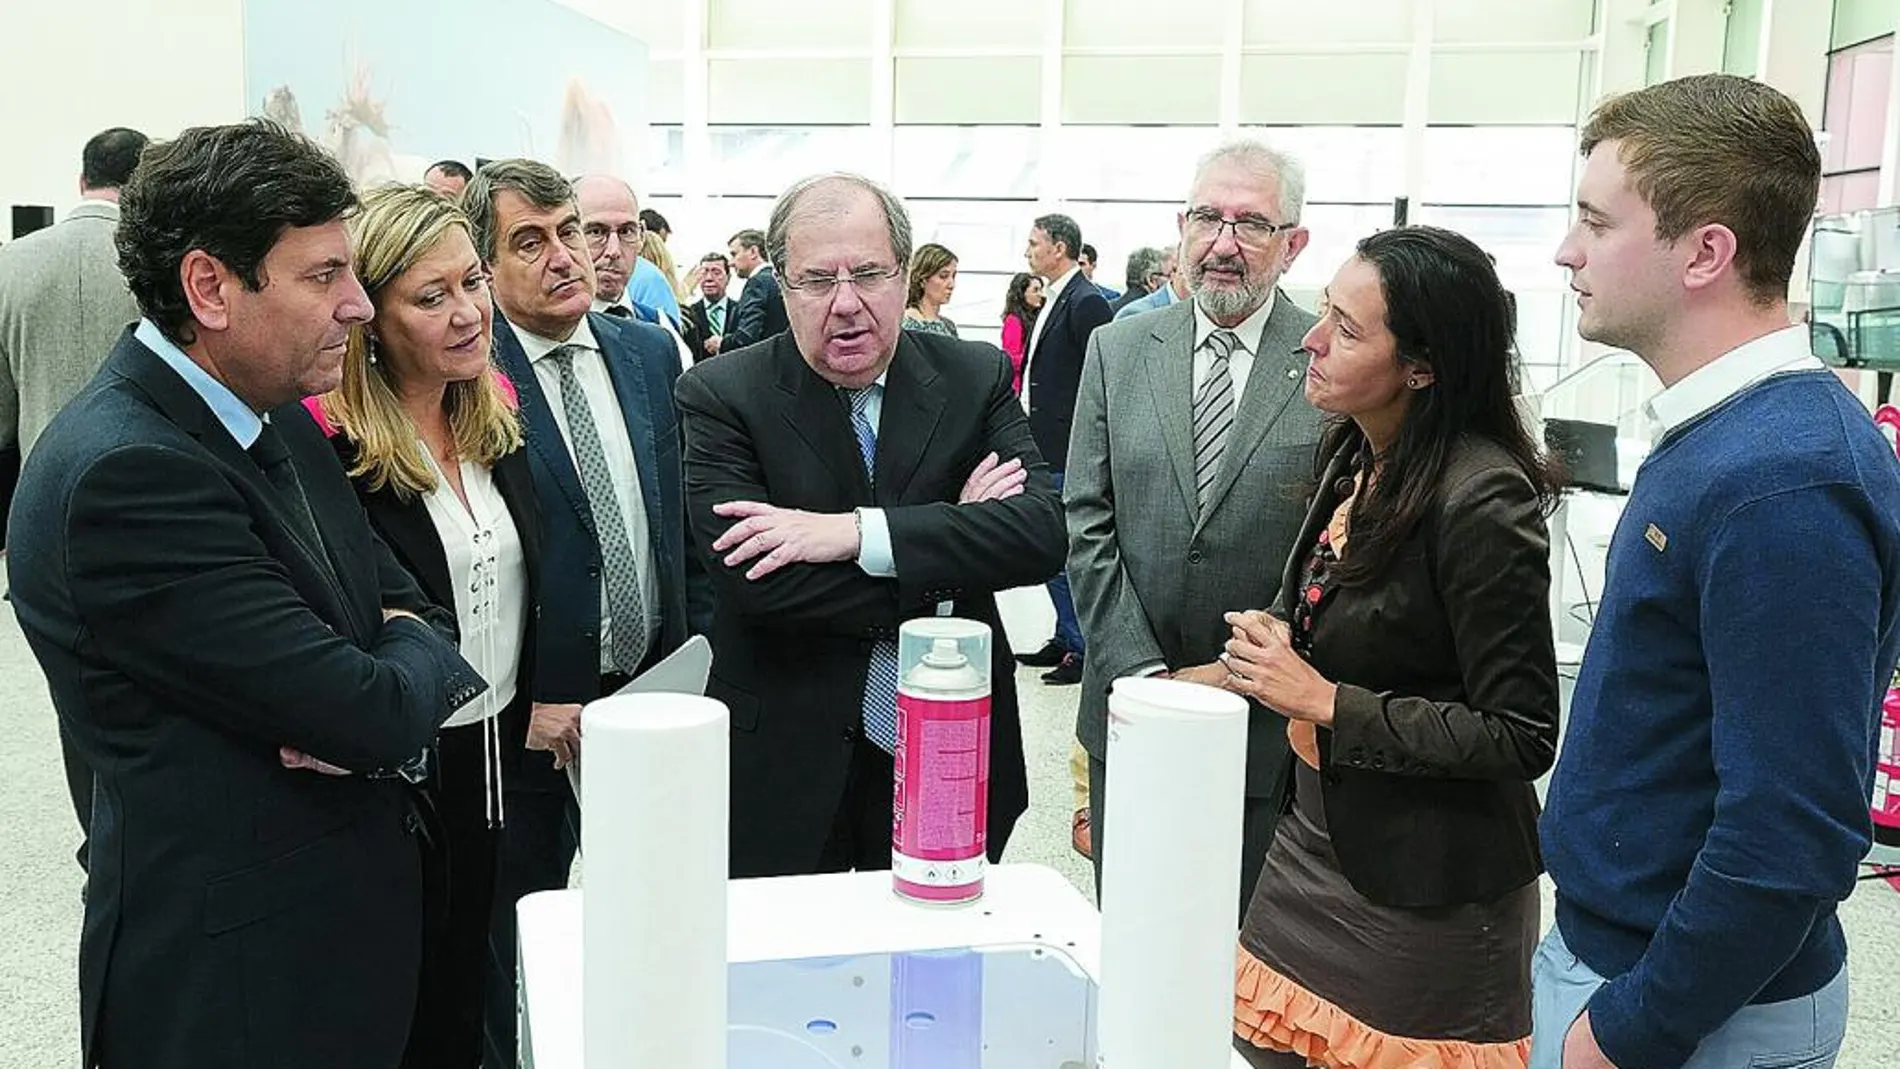 El presidente observa uno de los proyectos junto a los consejeros Pilar del Olmo y Carlos Fernández Carriedo.